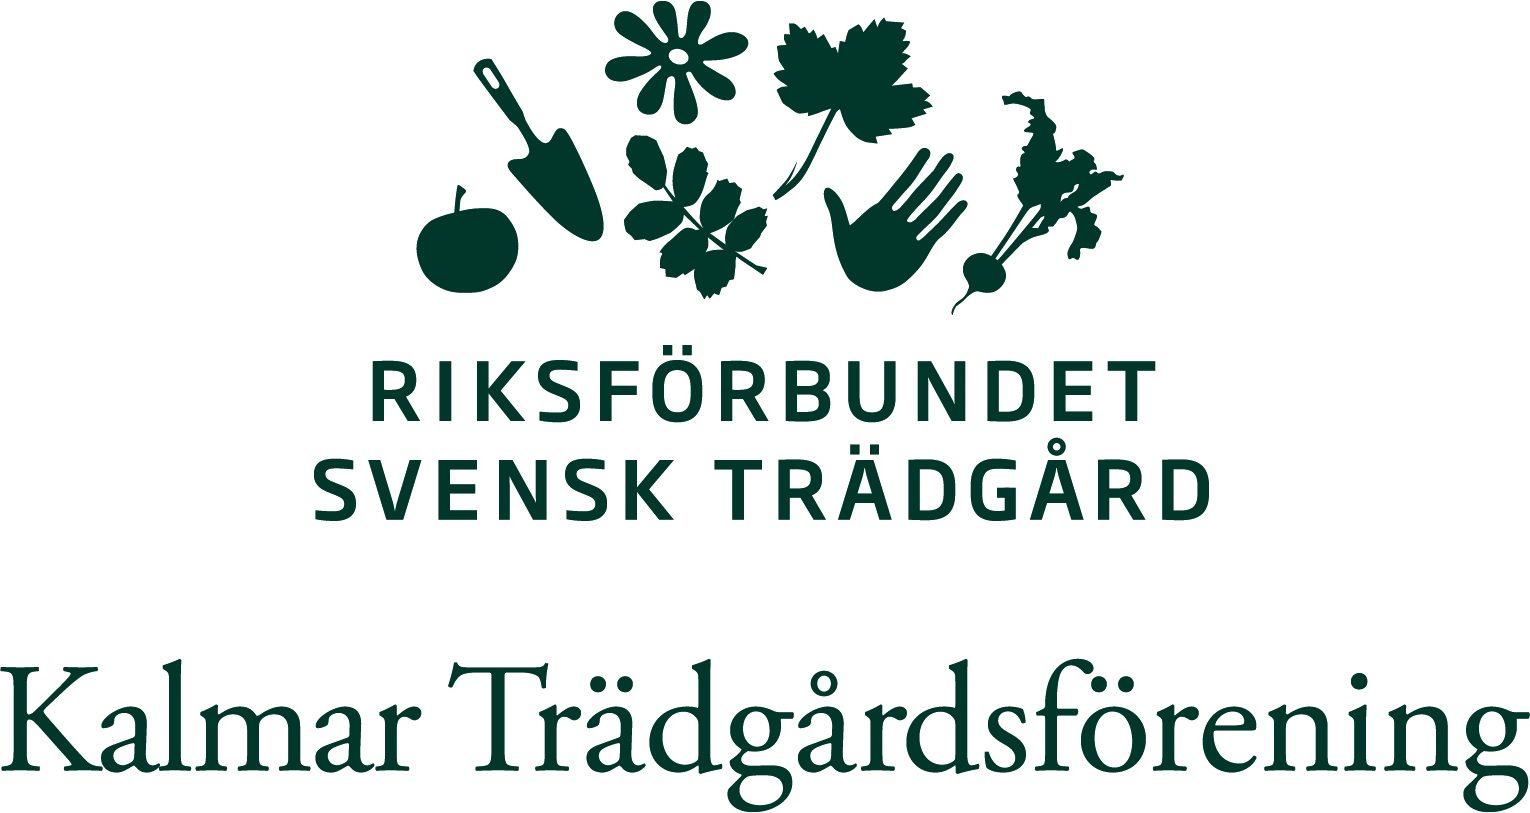 Kalmar Trädgårdsförening